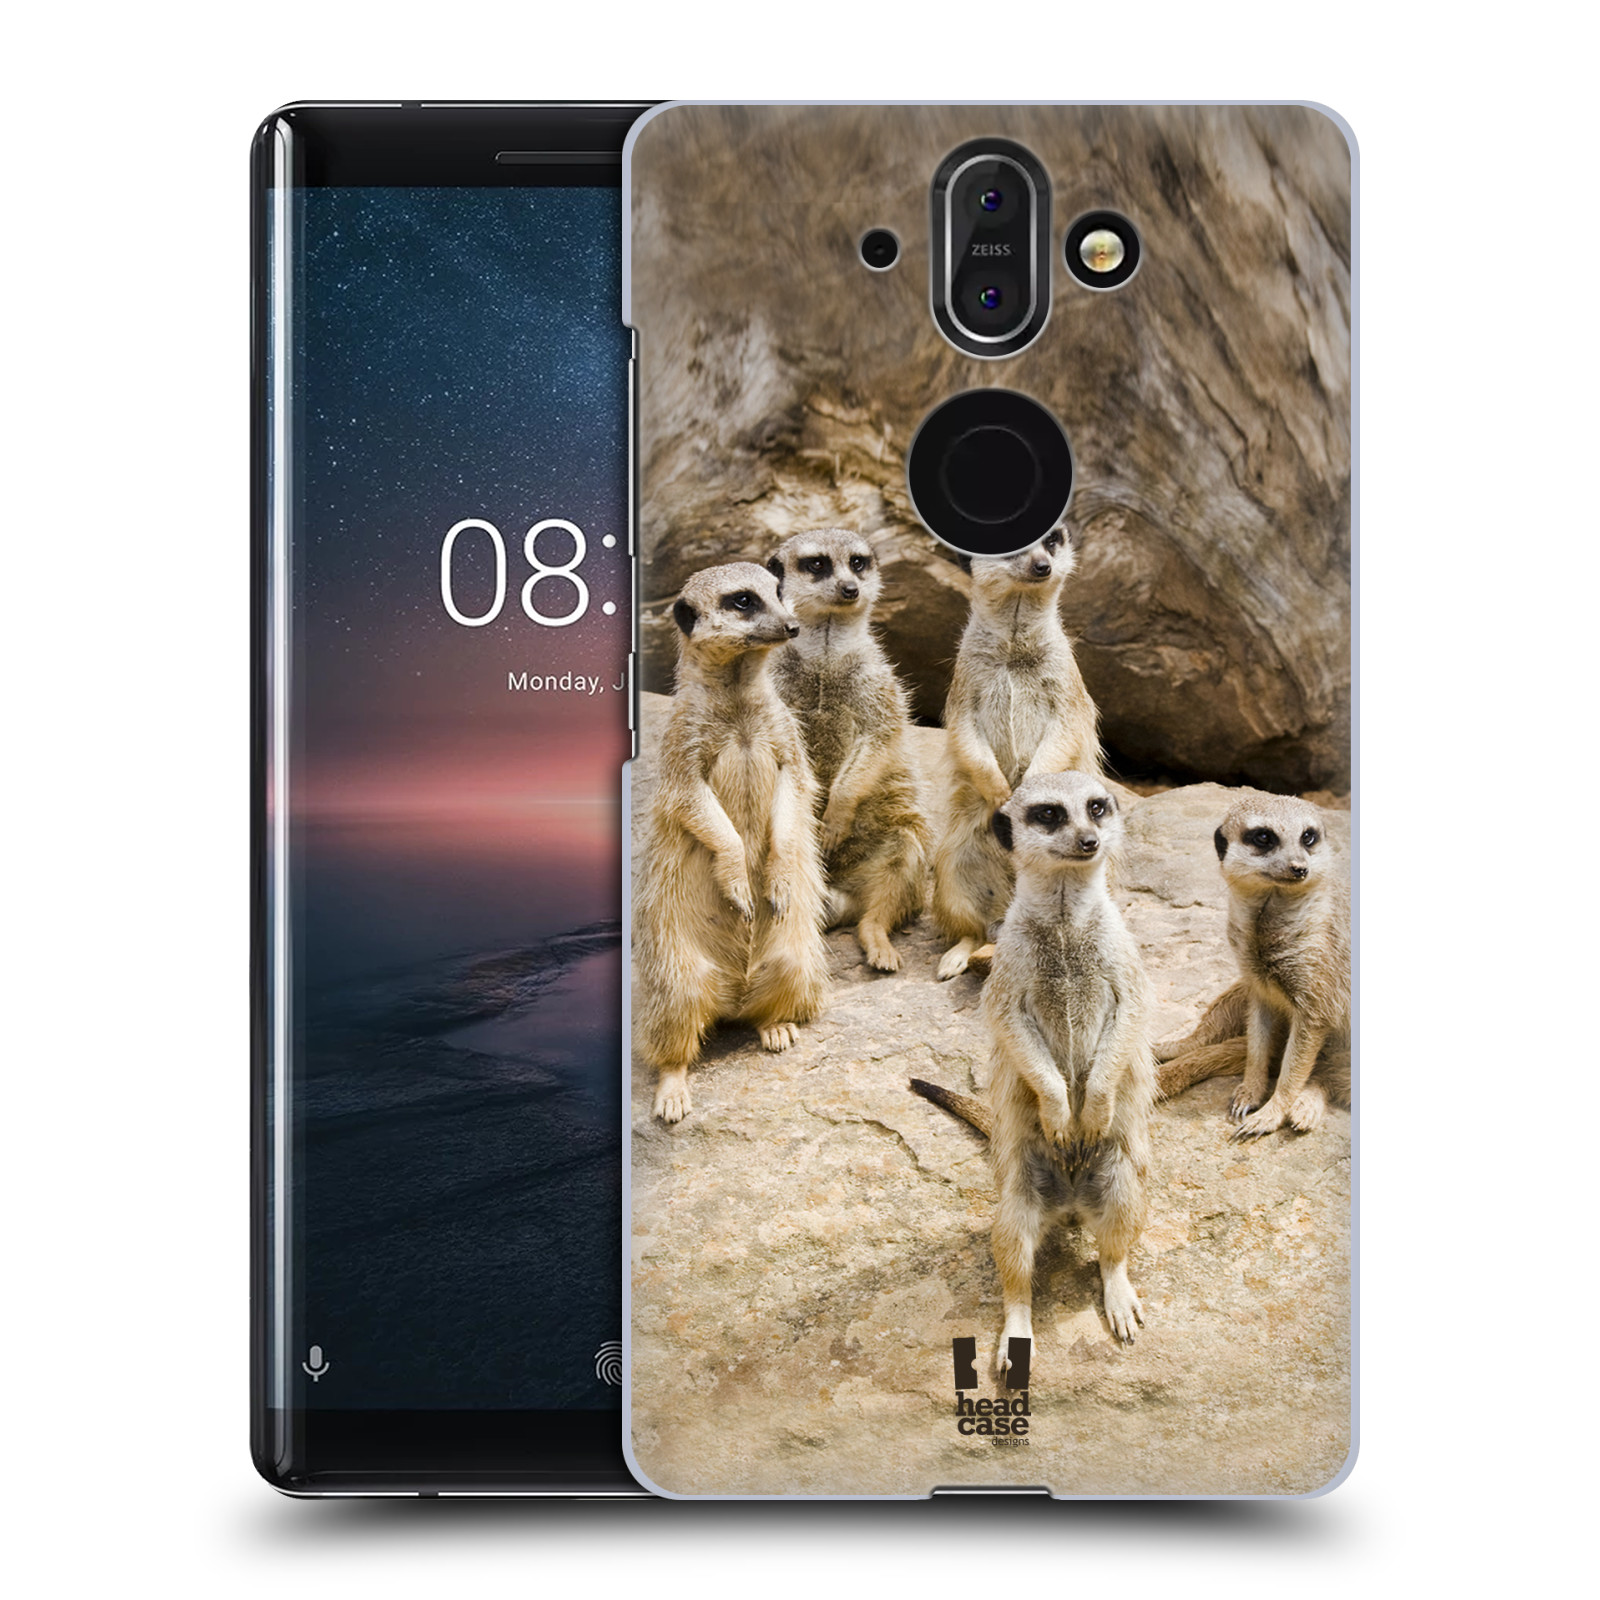 Zadní obal pro mobil Nokia 8 Sirocco - HEAD CASE - Svět zvířat roztomilé surikaty